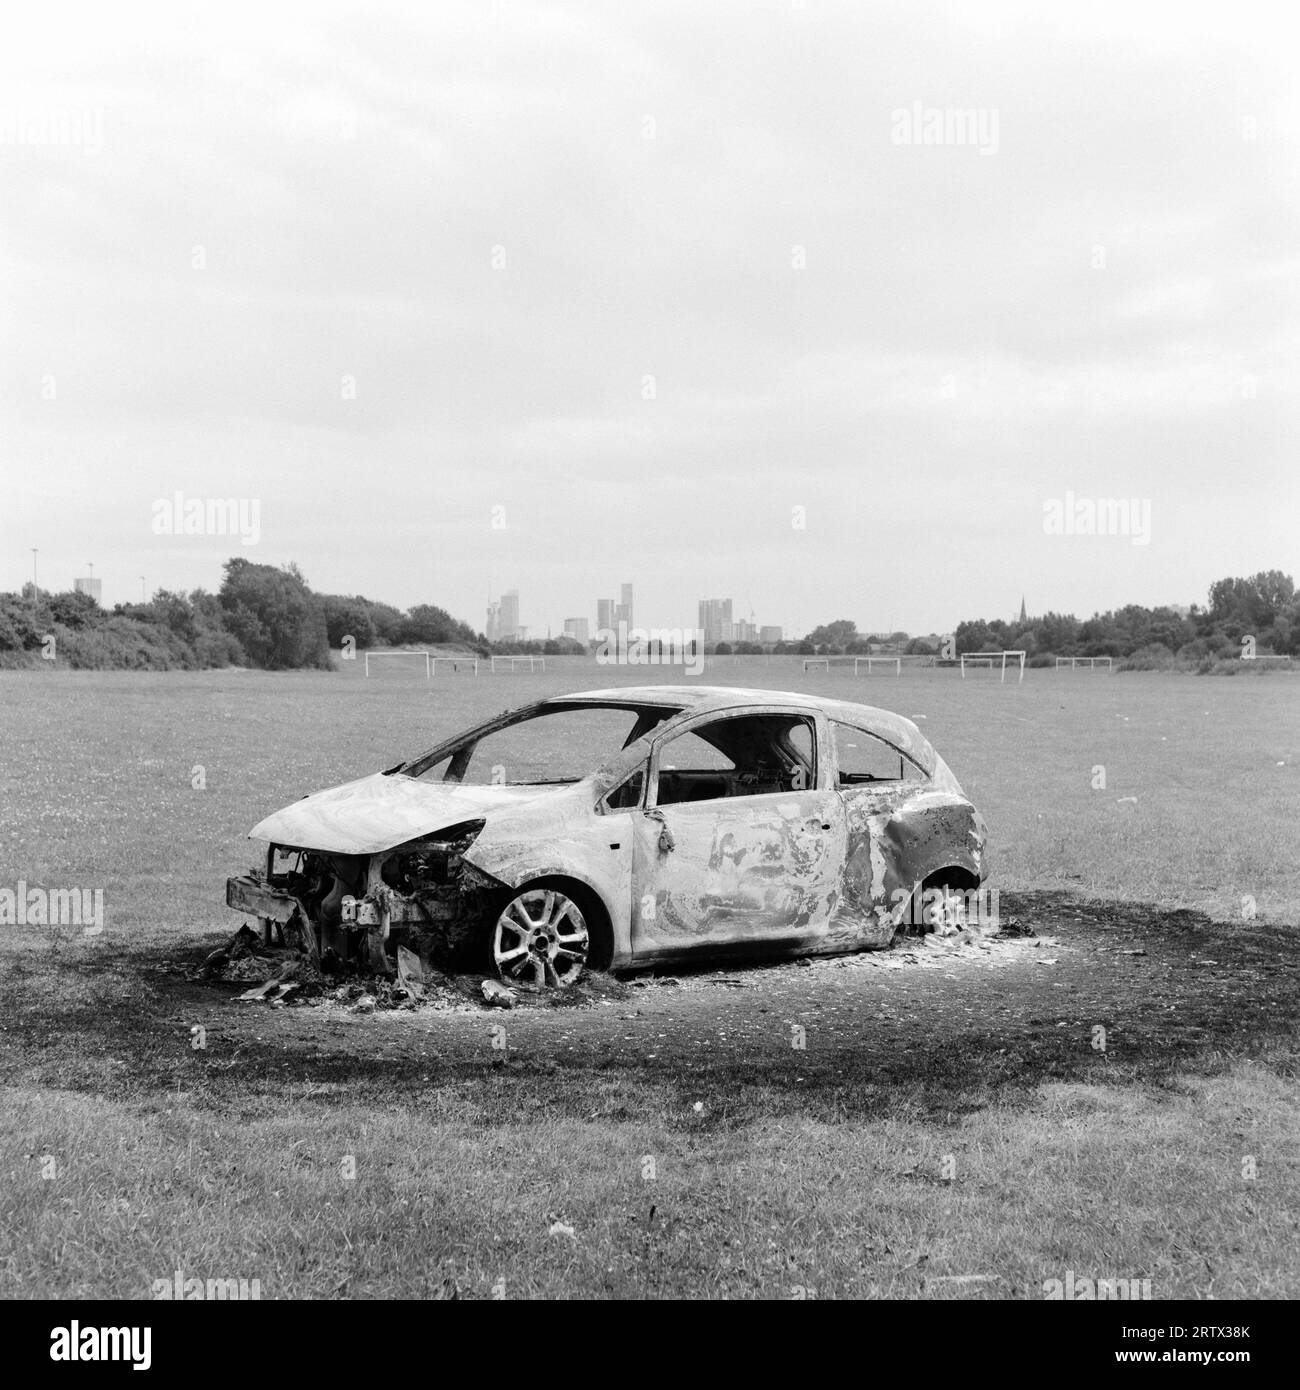 Burn Out Car, Kersal Playing Fields, Salford, UK. Skyline von Manchester City im Hintergrund. Autokriminalität, Diebstahl, antisoziales Verhalten. Juli 2023 Stockfoto